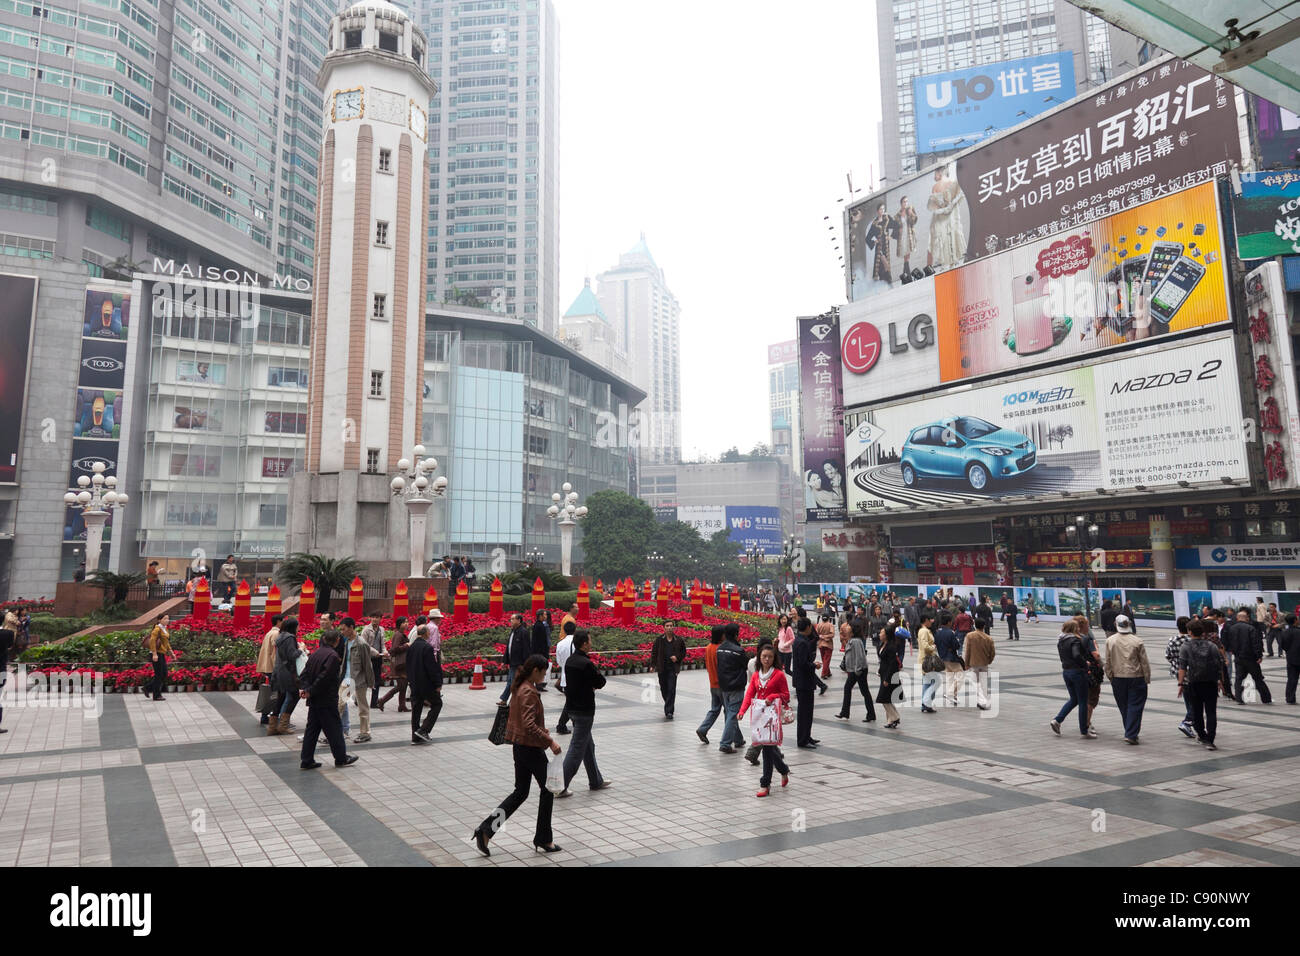 Place publique à Chongqing, les piétons, publicité et gratte-ciel, Chongqing, Chine Banque D'Images